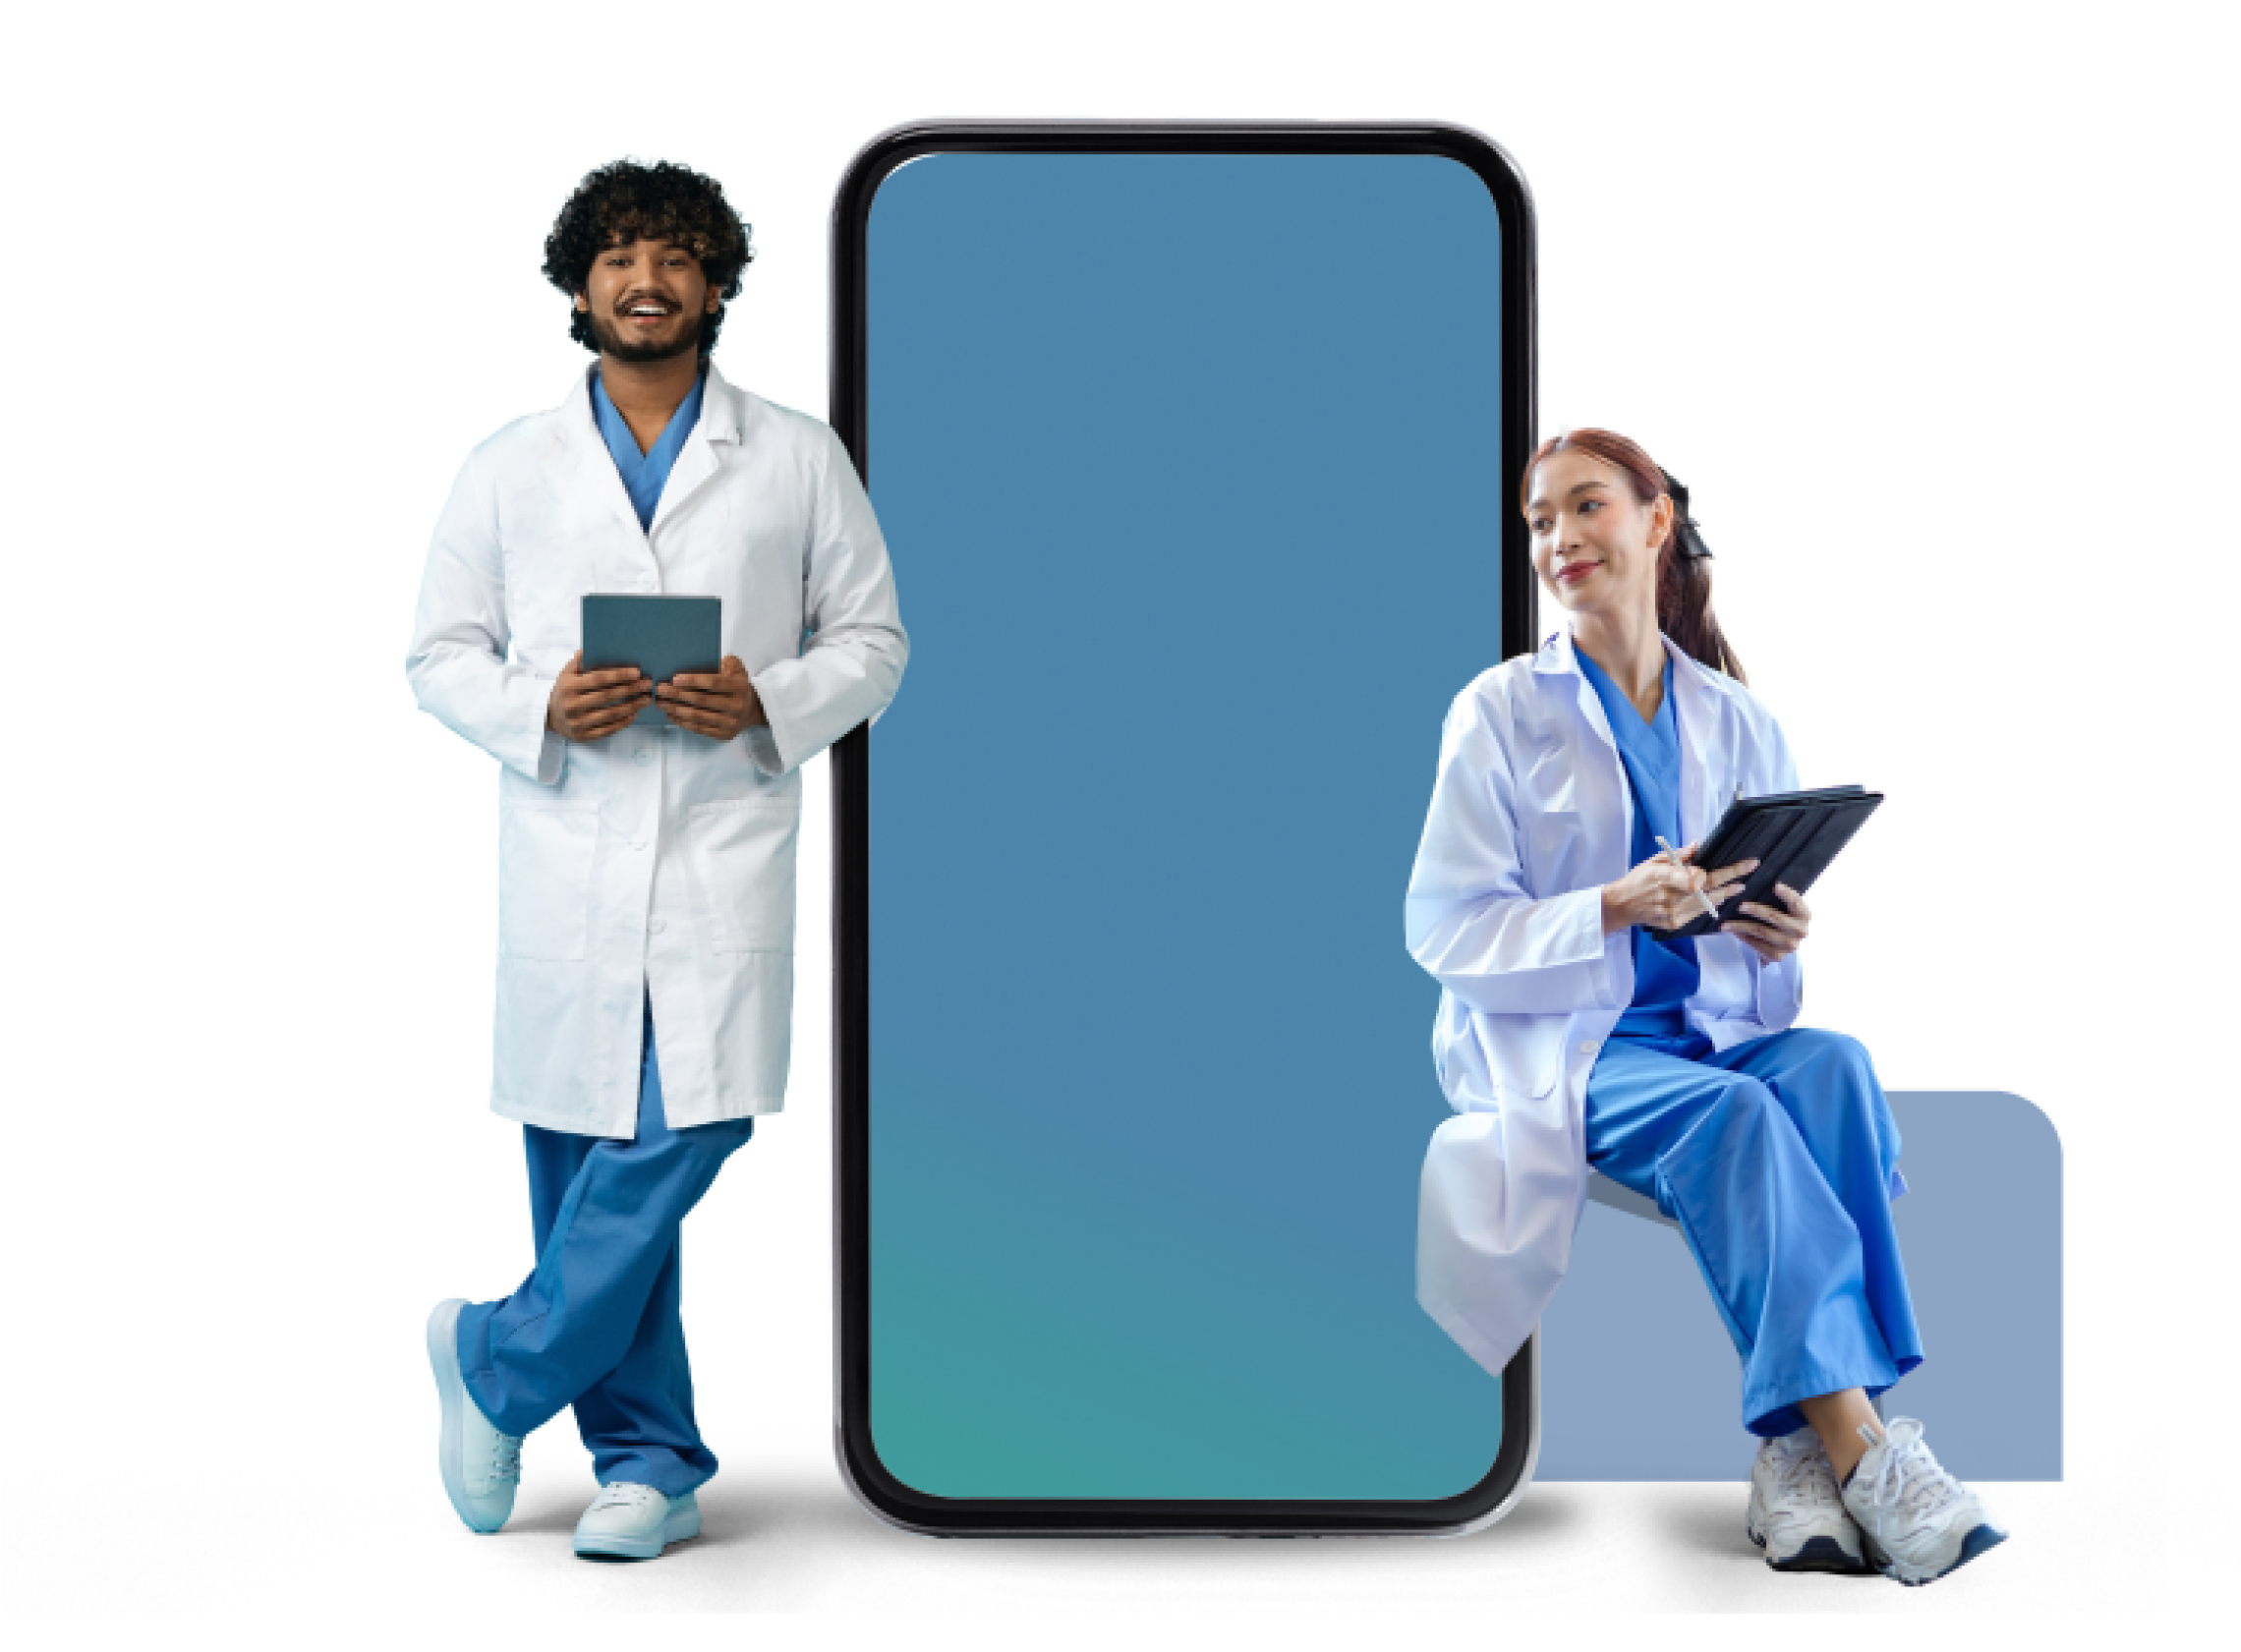 Ein Arzt und eine Ärztin, die neben einem mannshohen Smartphone stehen